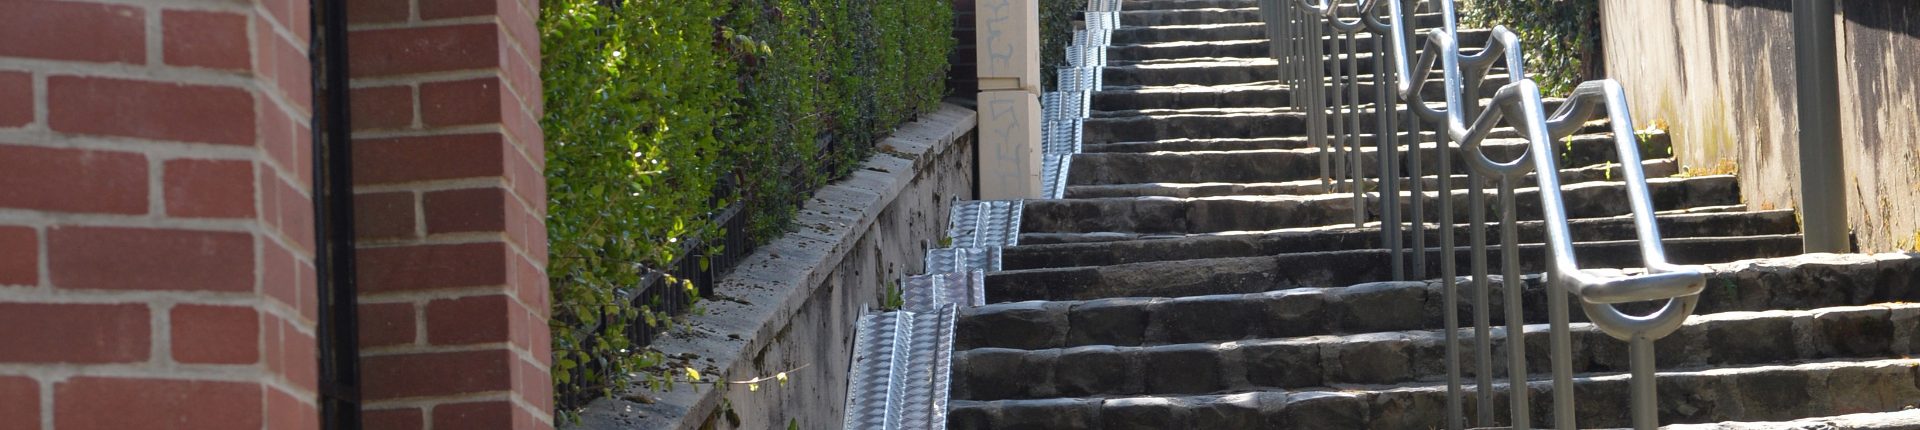 Escaliers équipés de goulottes